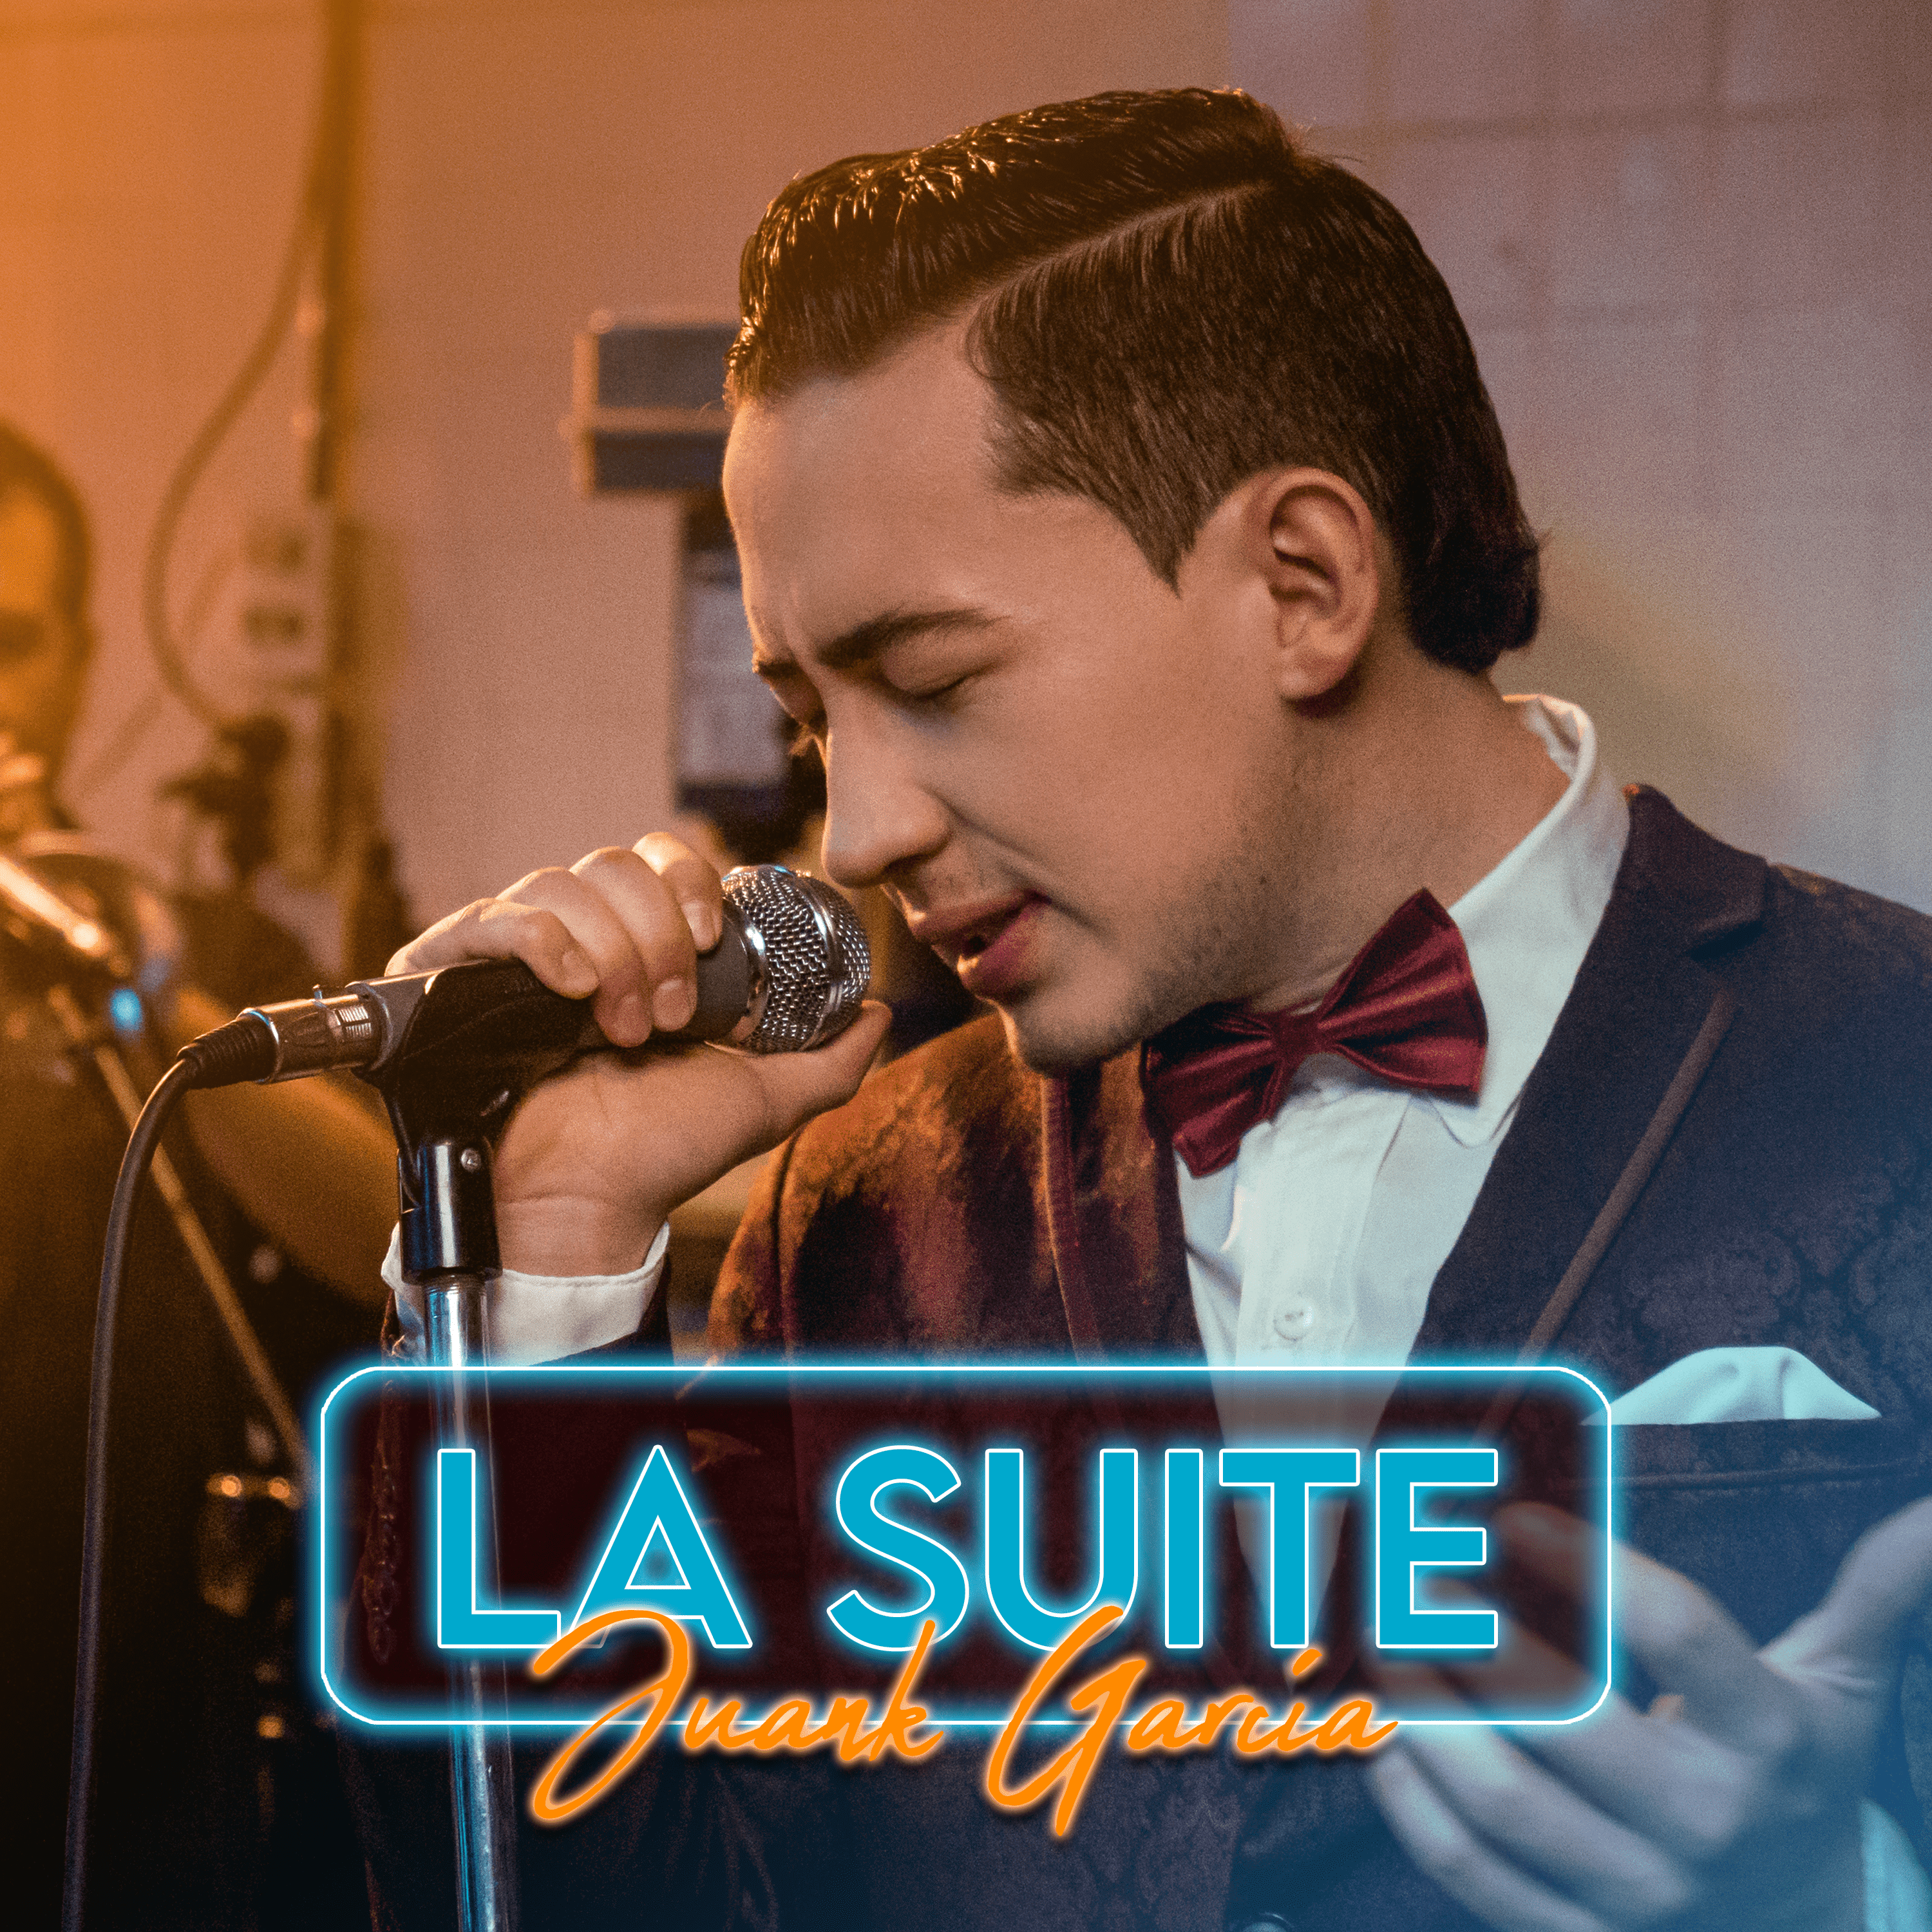 Al mejor estilo de vals ranchero Juank García nos presenta su nueva canción ‘La Suite’ 